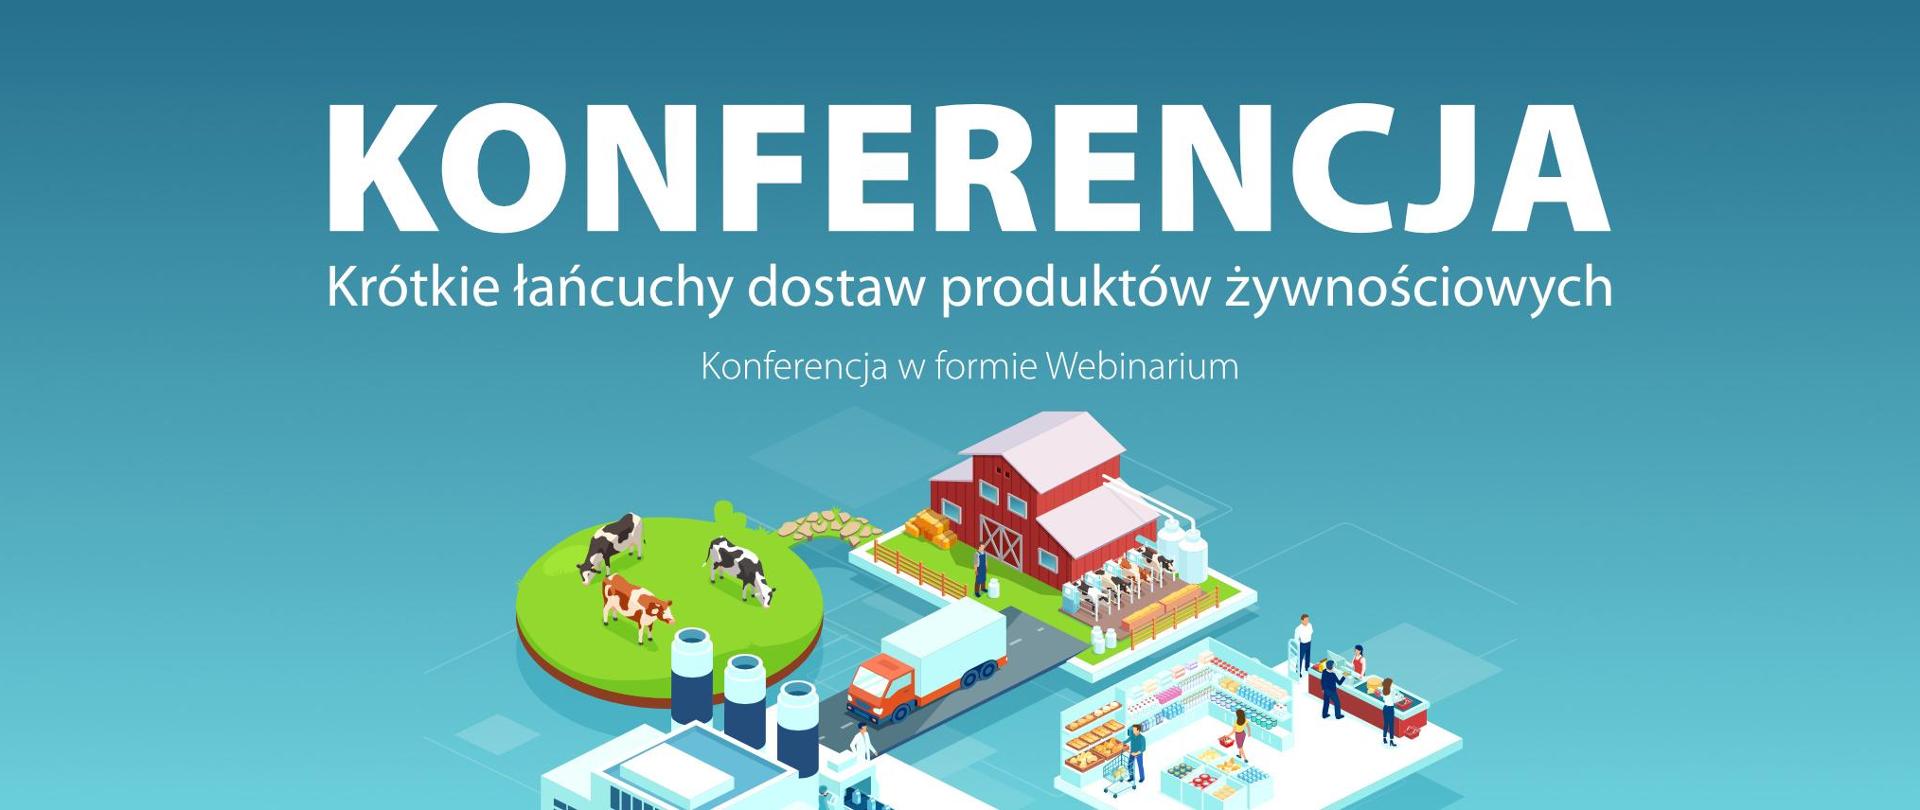 Konferencja - Krótkie łańcuchy dostaw produktów żywnościowych